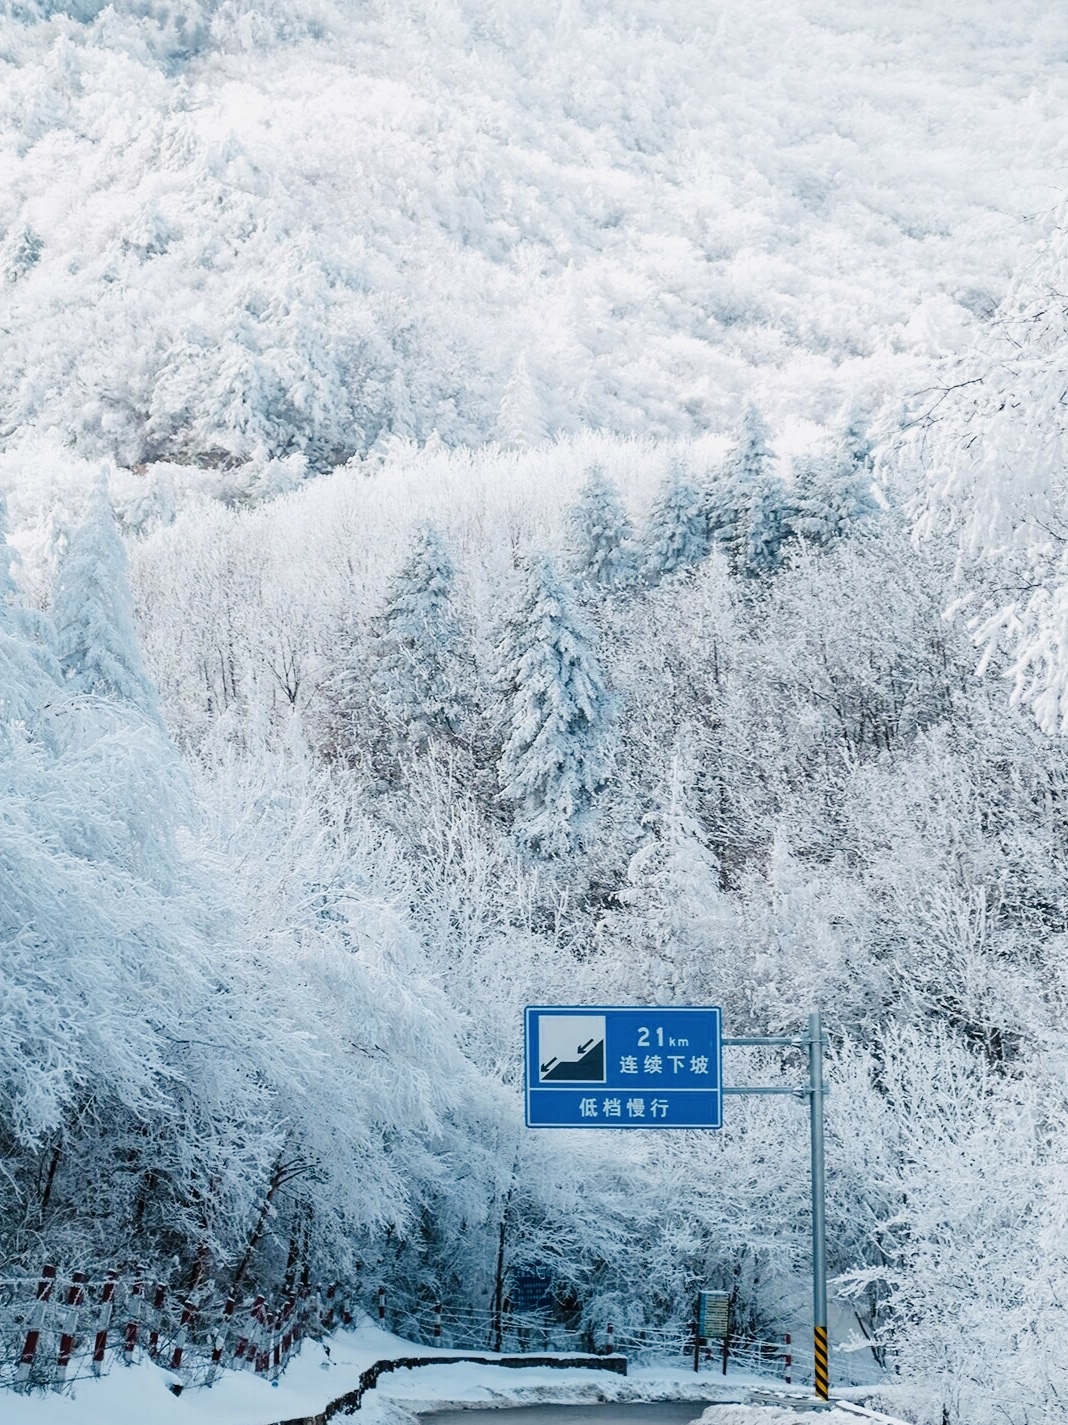 西安的冬天:一条通往童话世界的路